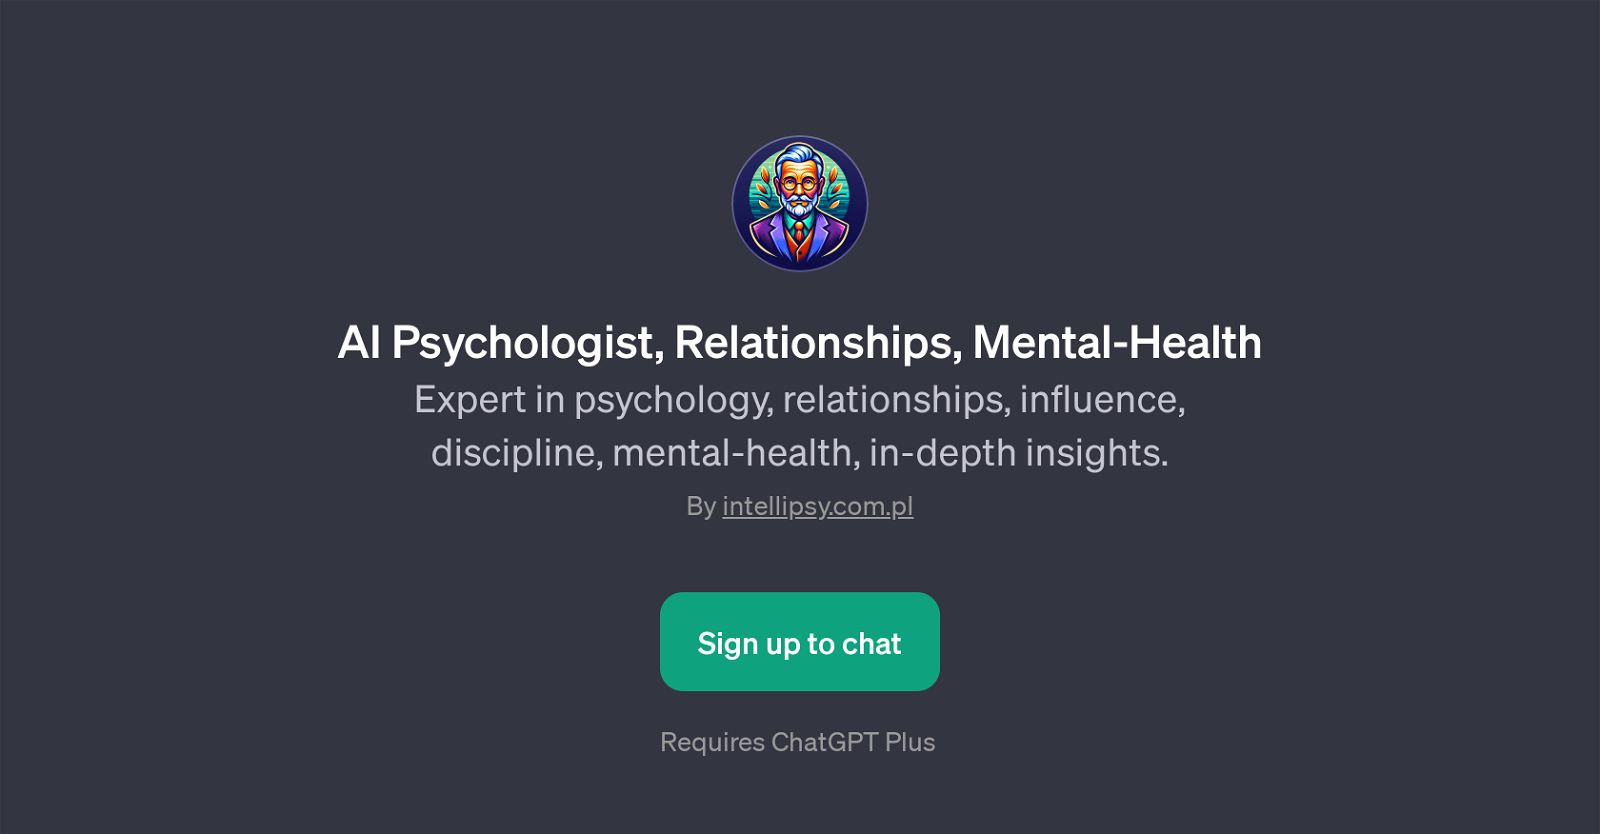 AI Psychologist, Relationships, Mental-Health GPT website